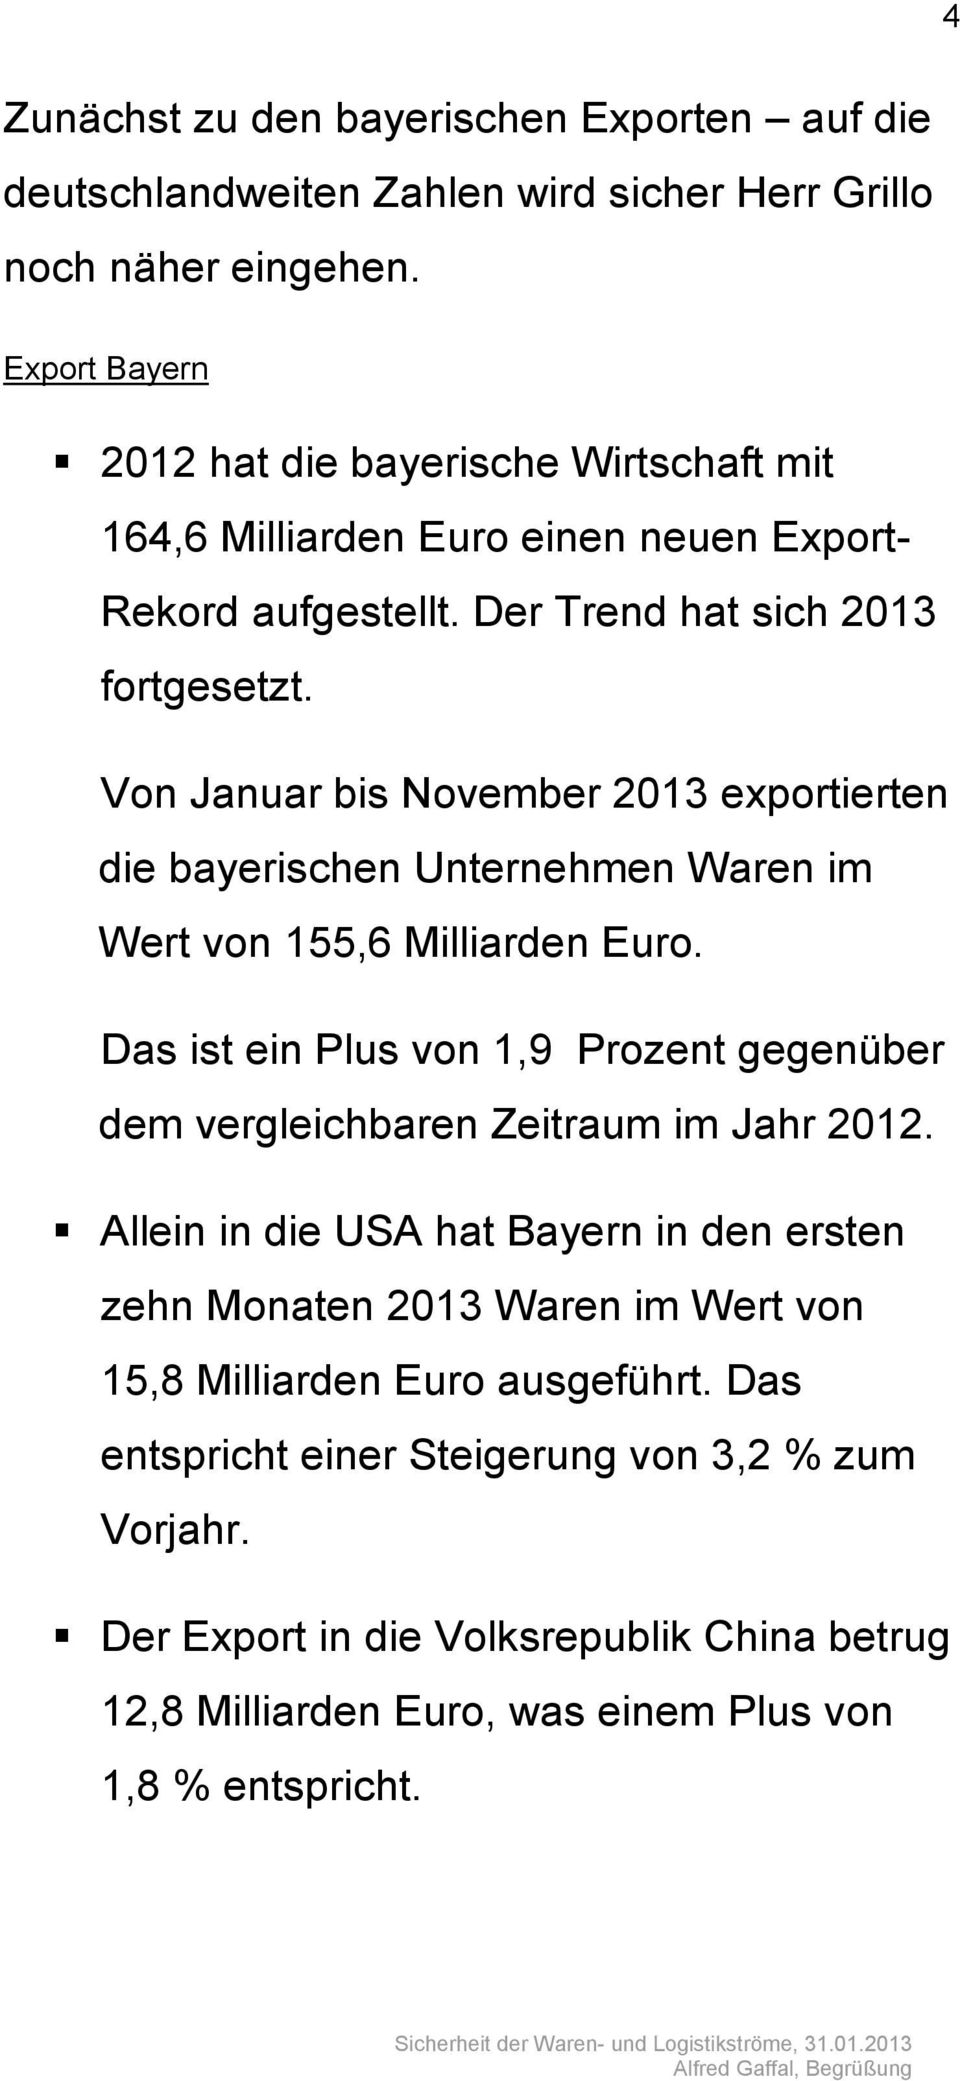 Von Januar bis November 2013 exportierten die bayerischen Unternehmen Waren im Wert von 155,6 Milliarden Euro.